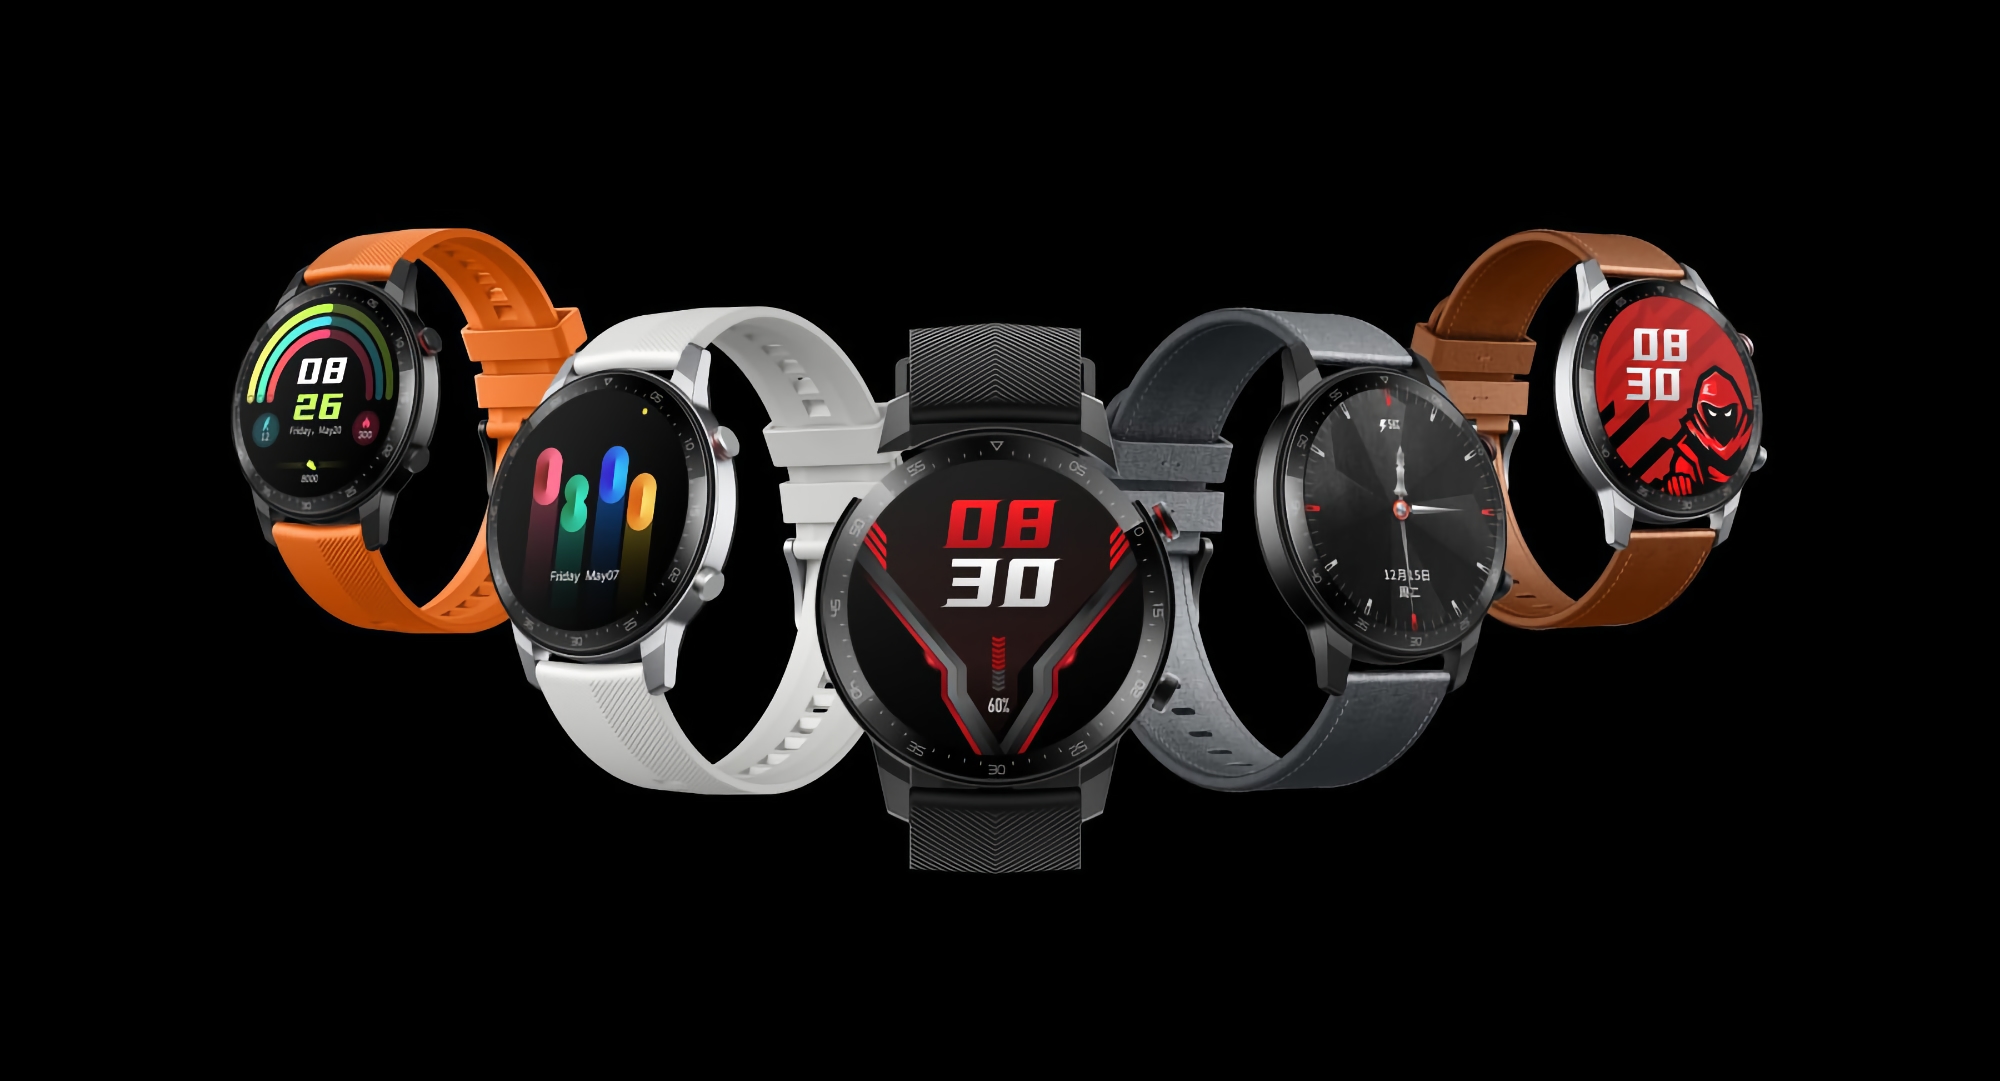 Nubia Red Magic Watch smartwatch z ekranem AMOLED, GPS i żywotnością baterii do 15 dni został wydany na światowym rynku